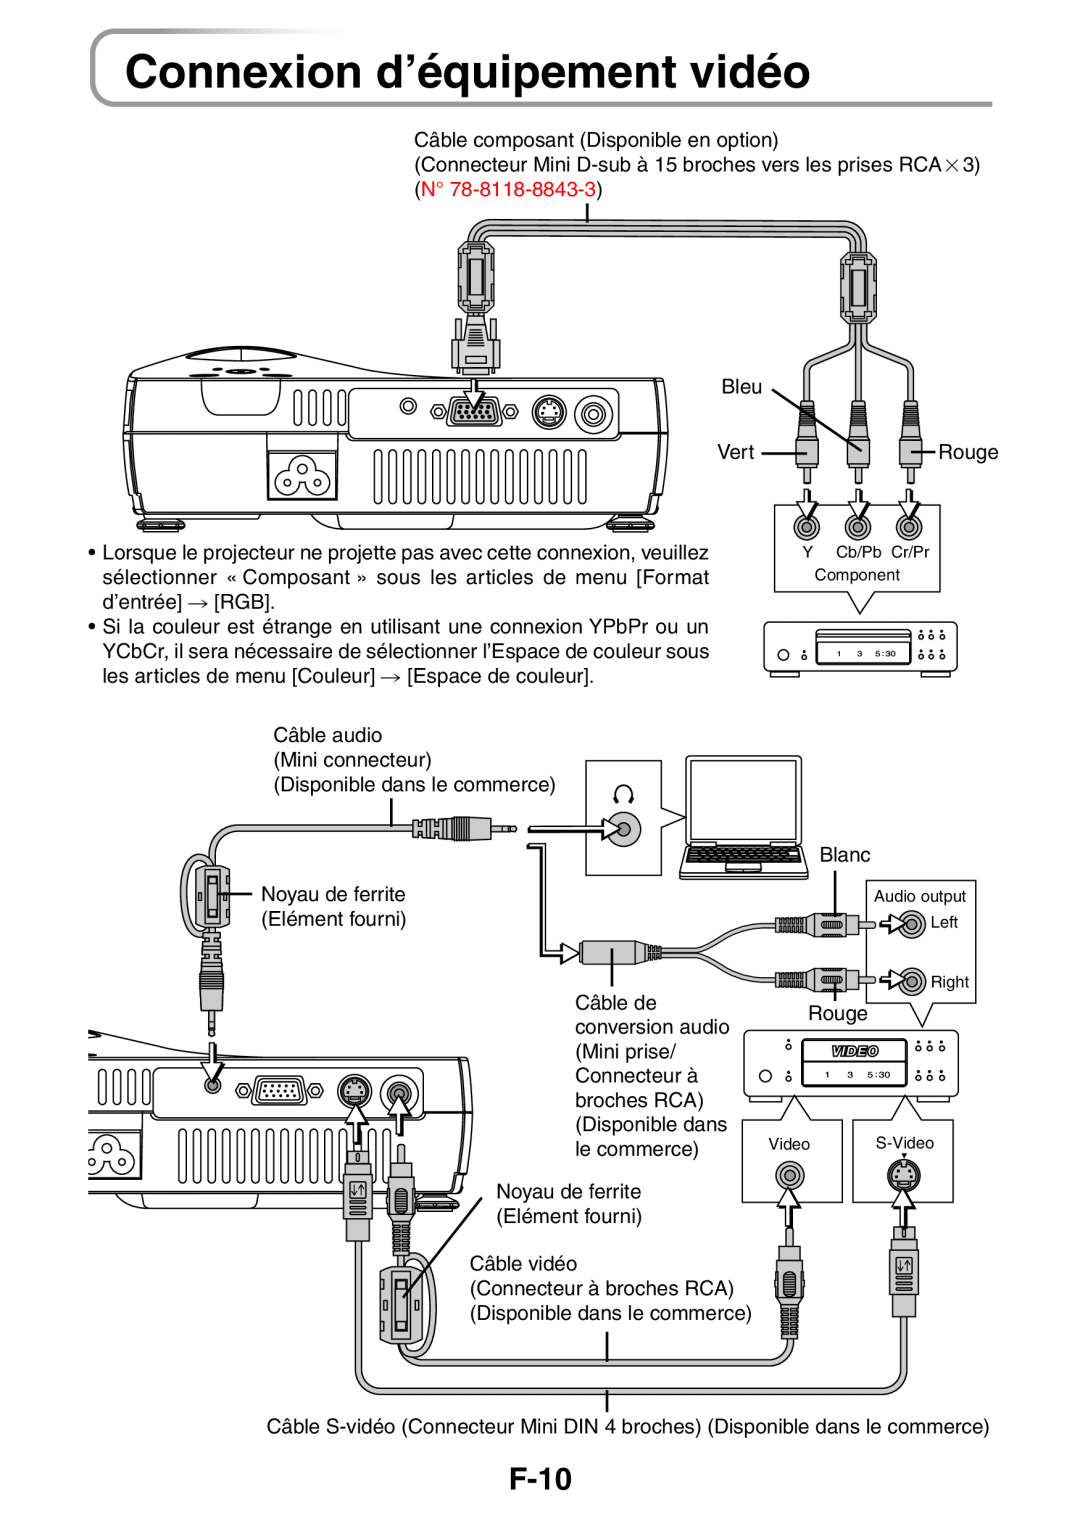 3M PX5 user manual Connexion d’équipement vidéo, F-10 